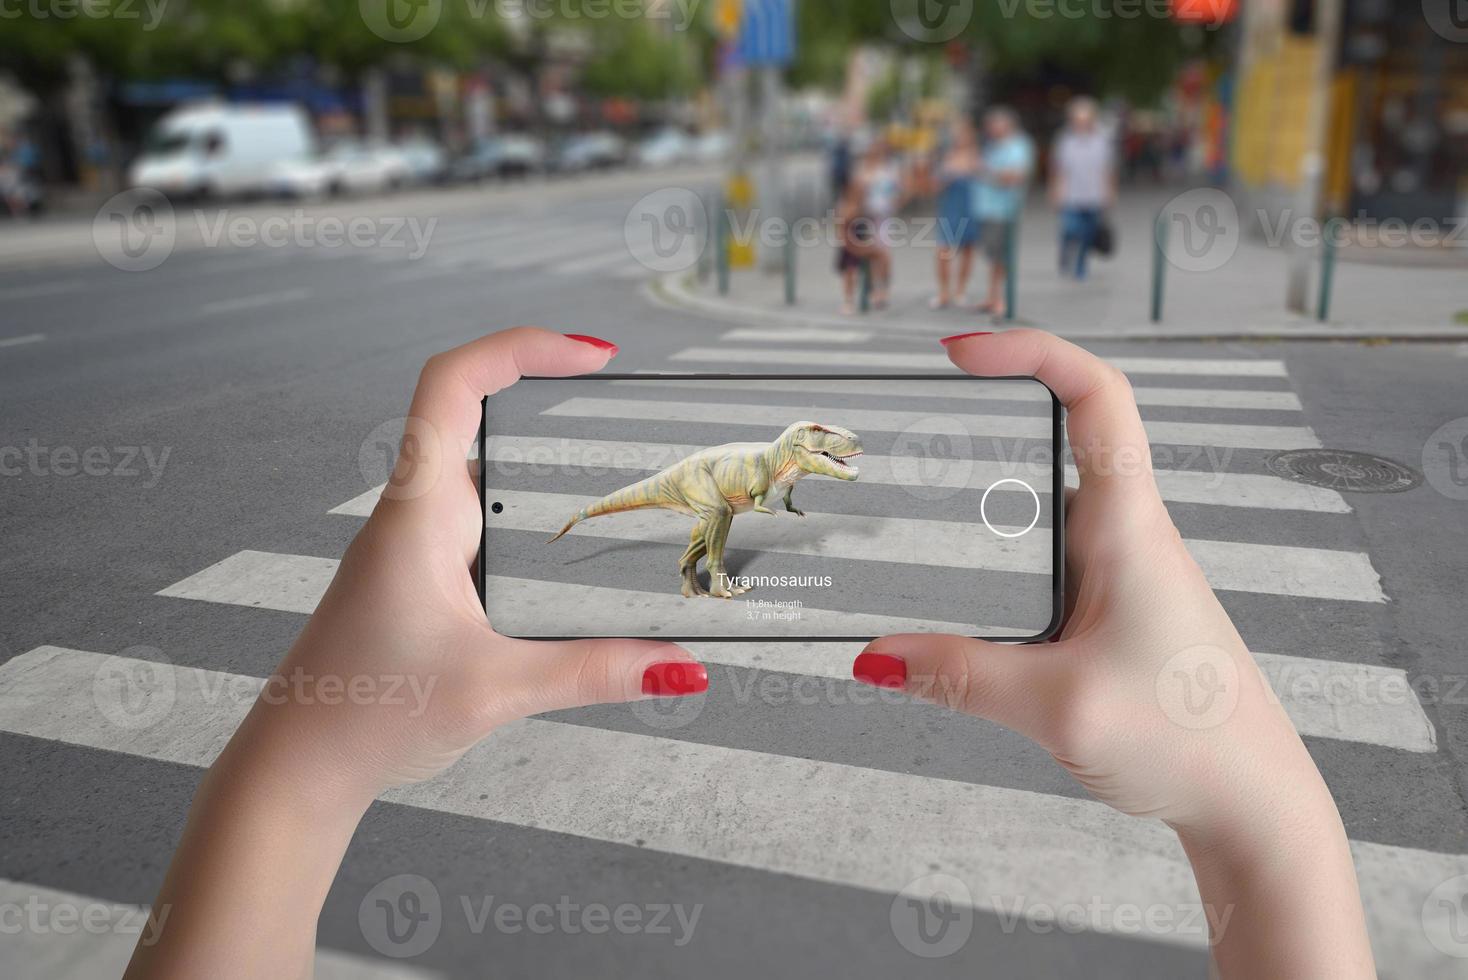 3D-projektion av dinosaurier på gatan med smart telefon och augmented reality-teknologikoncept foto